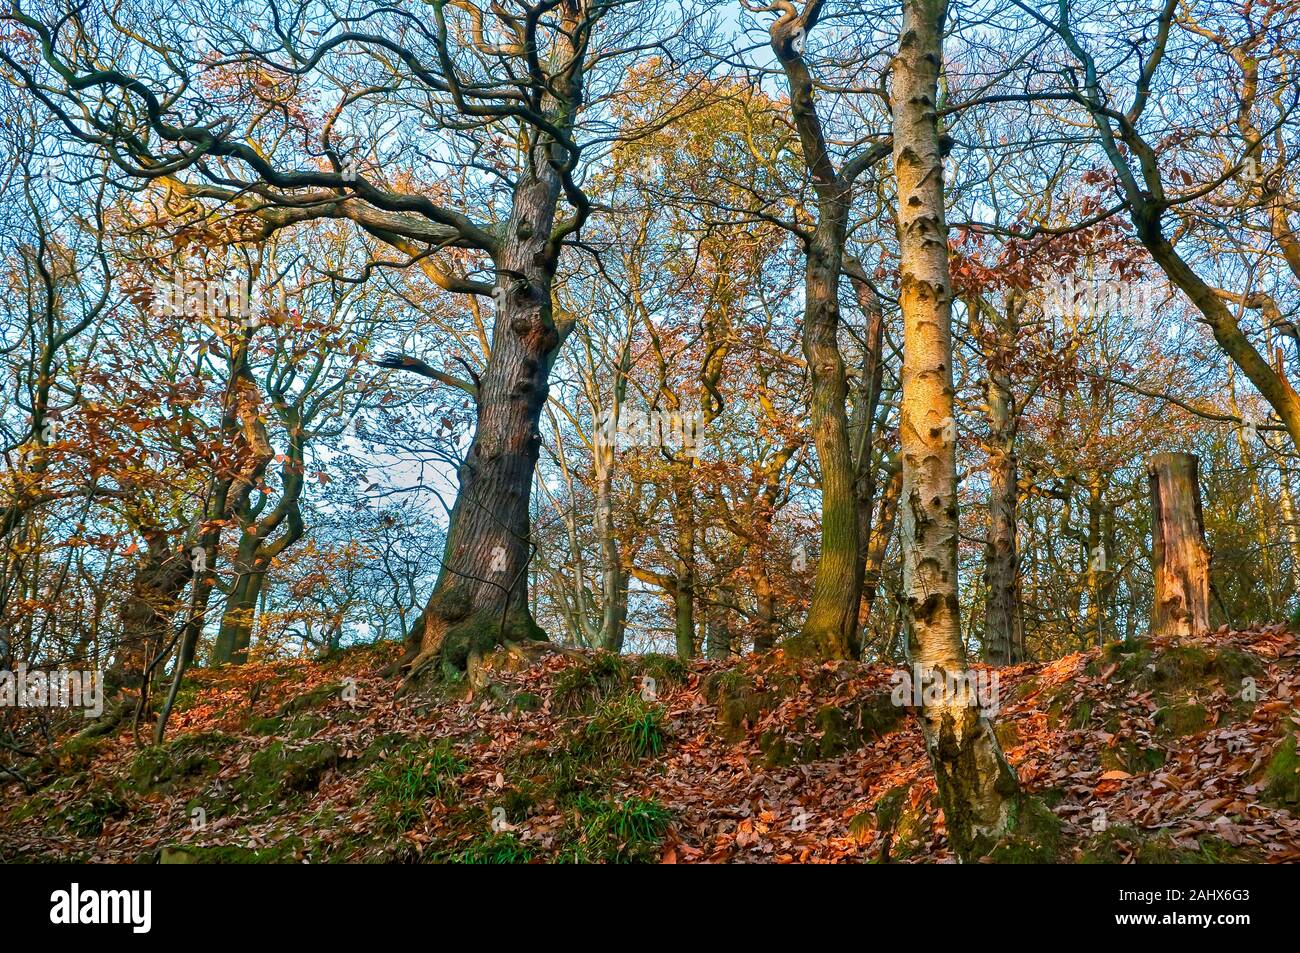 Silberbirke und andere Bäume in Ryecroft Glen in Ecclesall Woods, uralter Wald in Sheffield, am späten Nachmittag Herbstsonne mit blauem Himmel Stockfoto